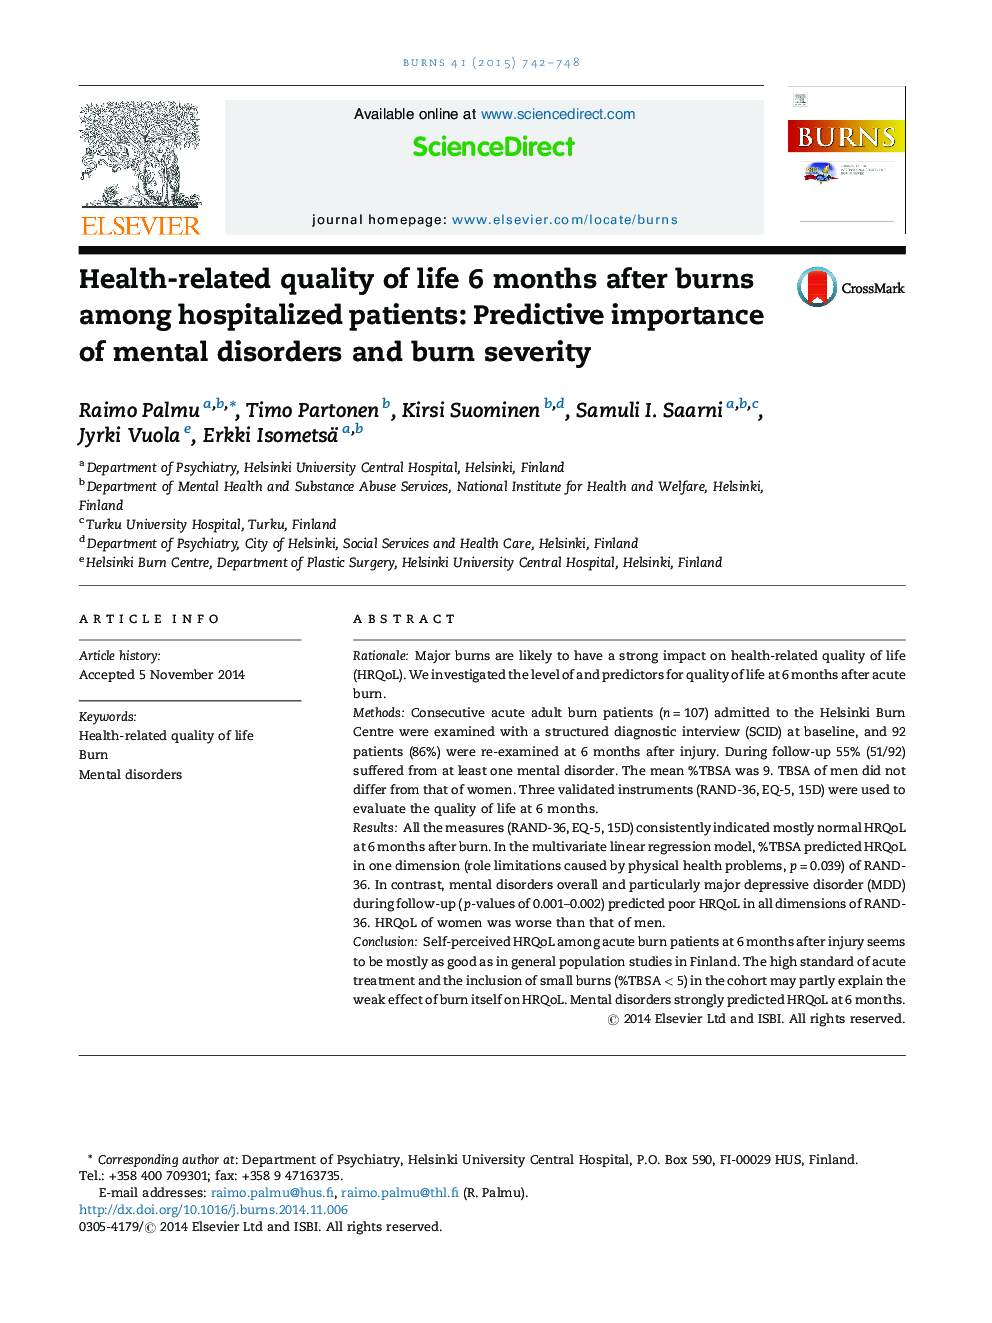 کیفیت زندگی مرتبط با سلامت 6 ماه پس از سوختگی در بیماران بستری: اهمیت پیش بینی کننده اختلالات روانی و شدت سوختگی 